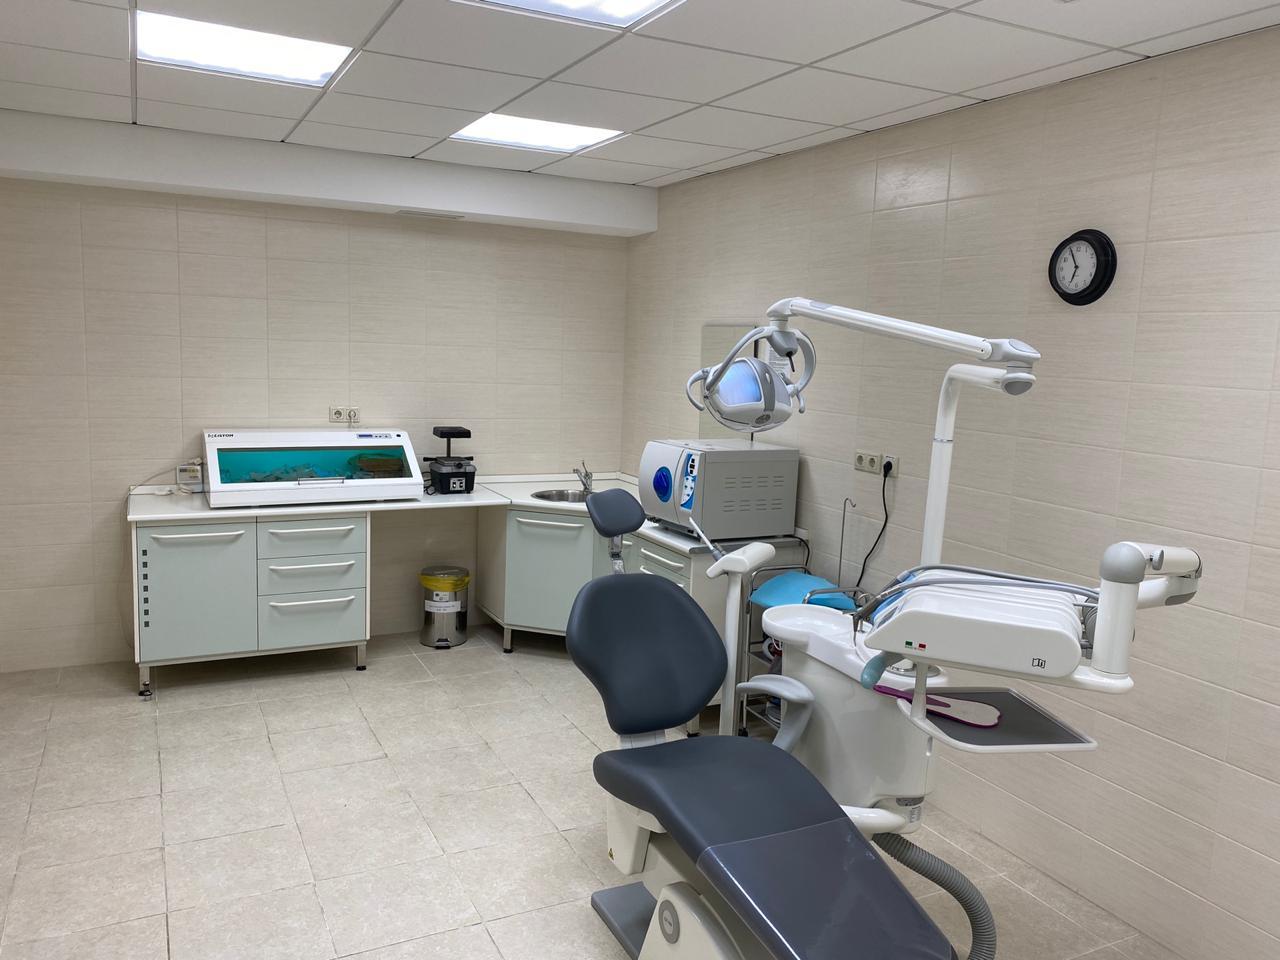 208 каб. Стоматологический кабинет. Кабинет стоматолога. 208 Кабинет стоматология. Зубоврачебный кабинет Бор.